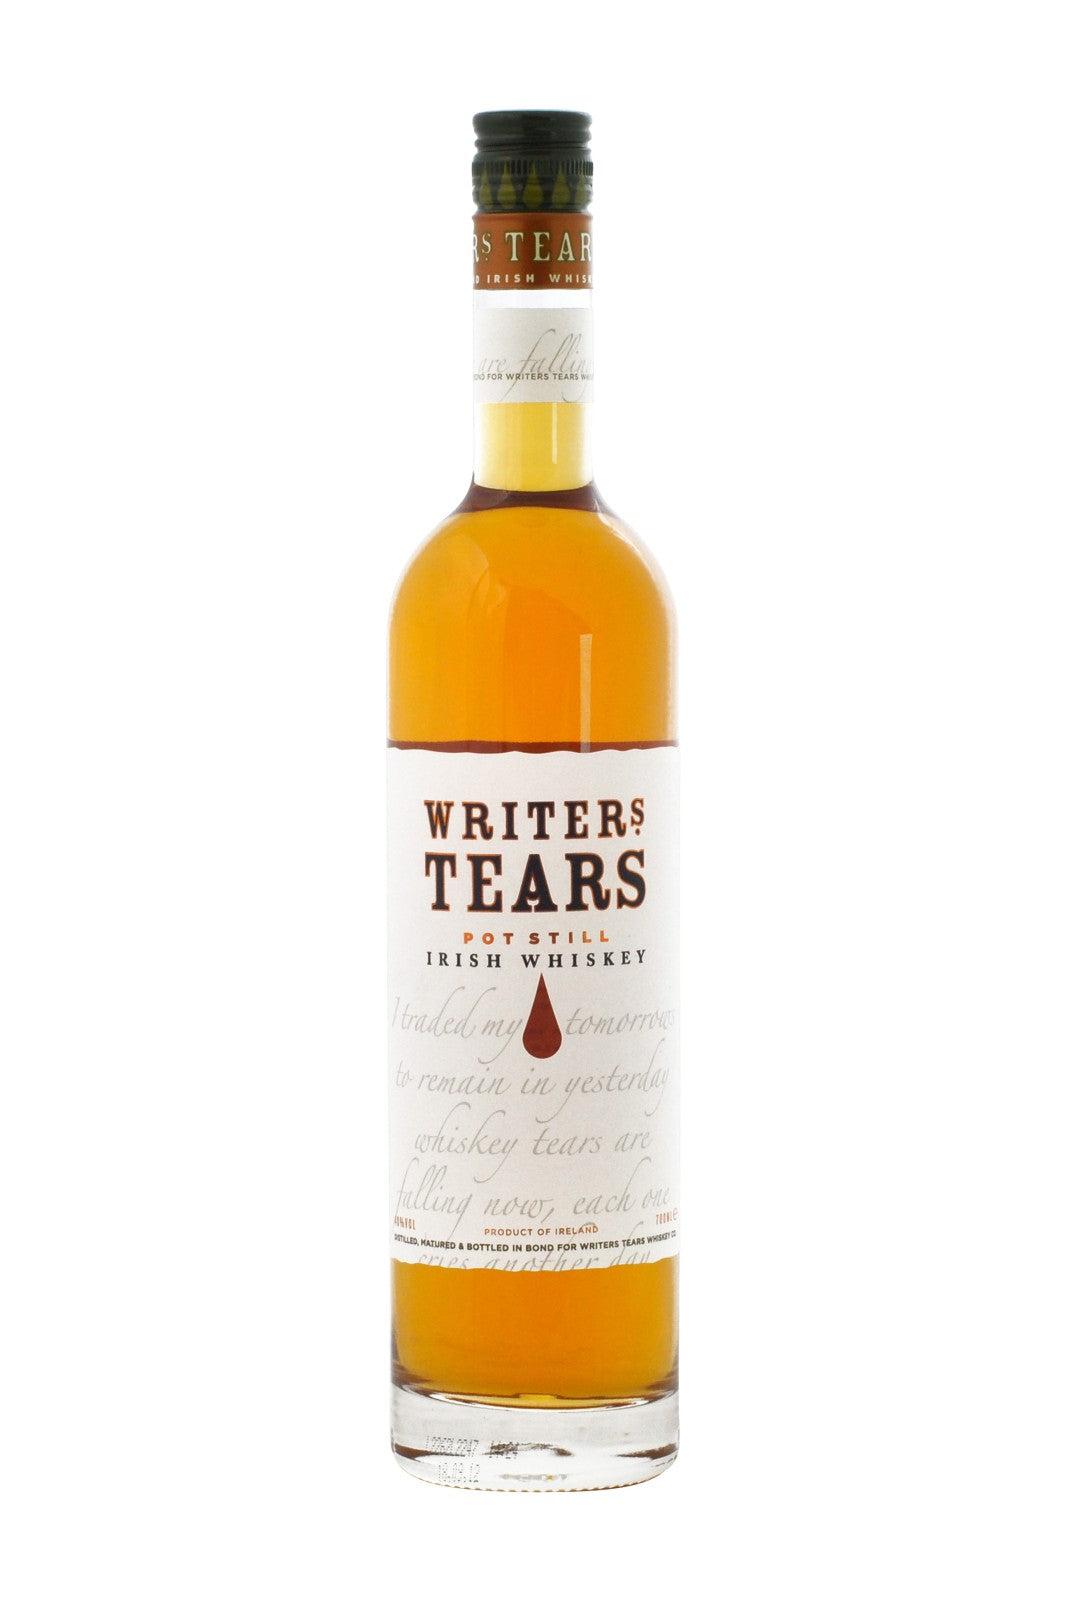 Writer's Tears Gift Box 2 glasses